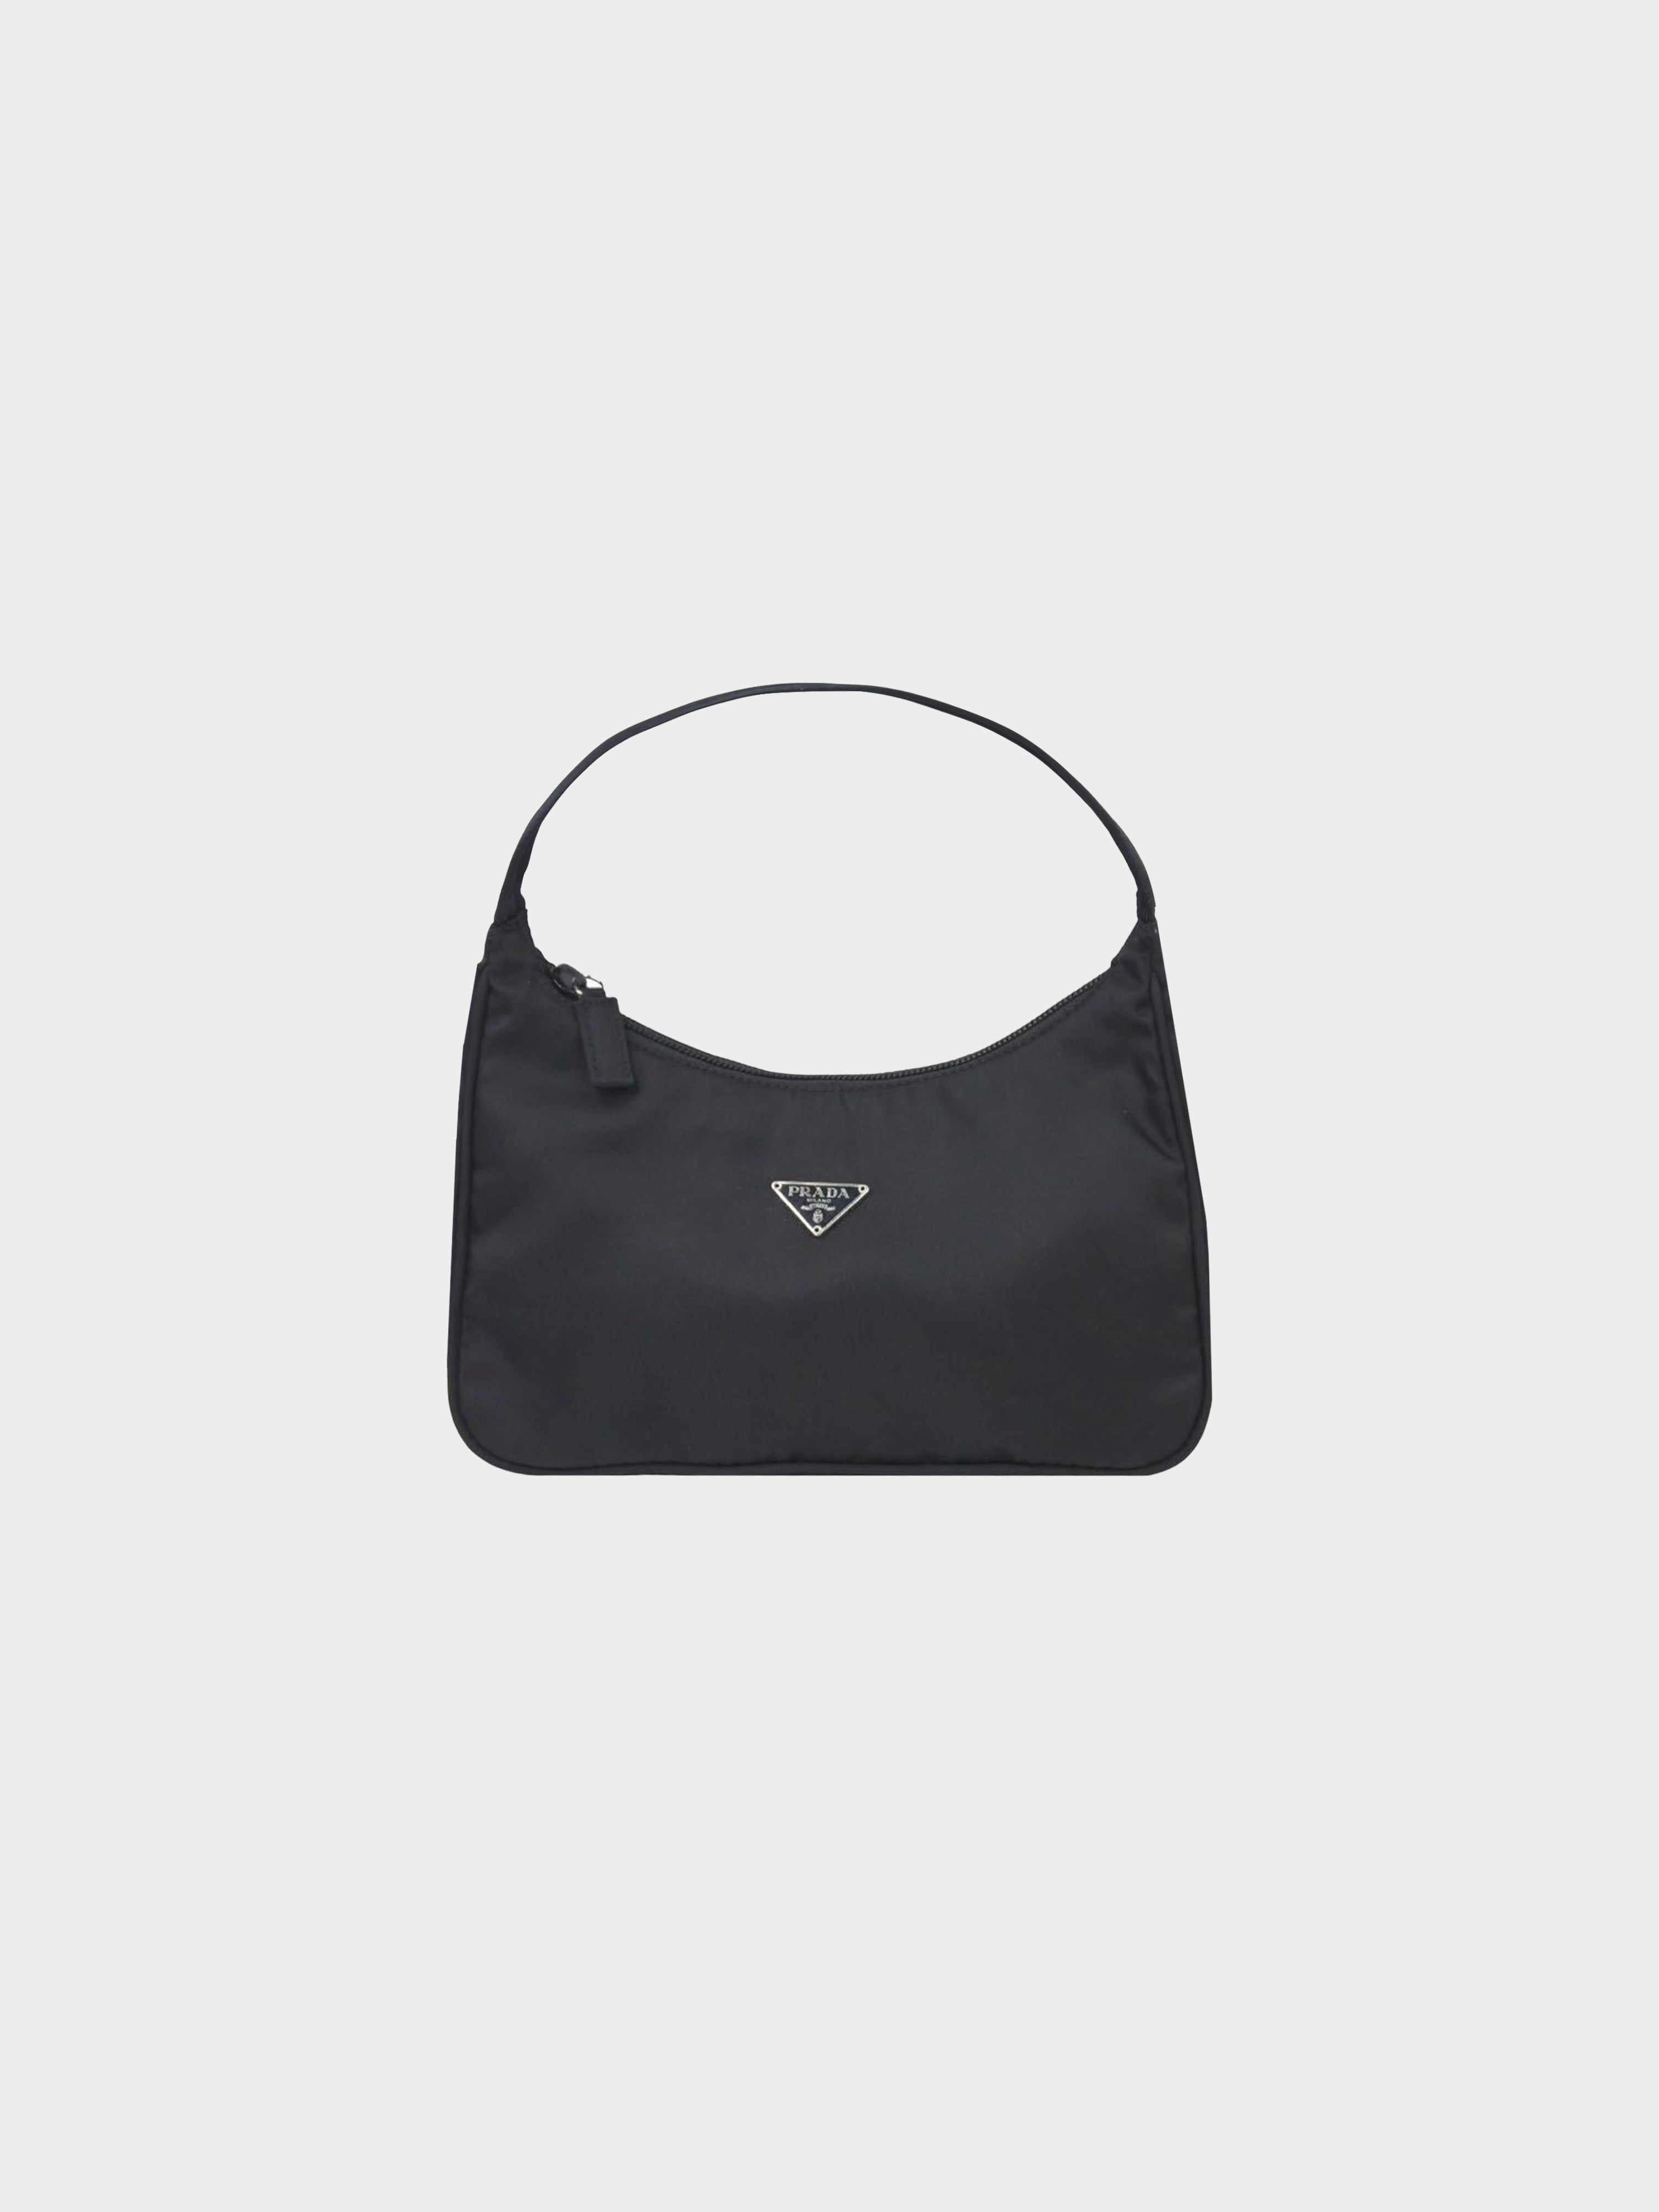 Prada 2000s Black Nylon Shoulder Bag